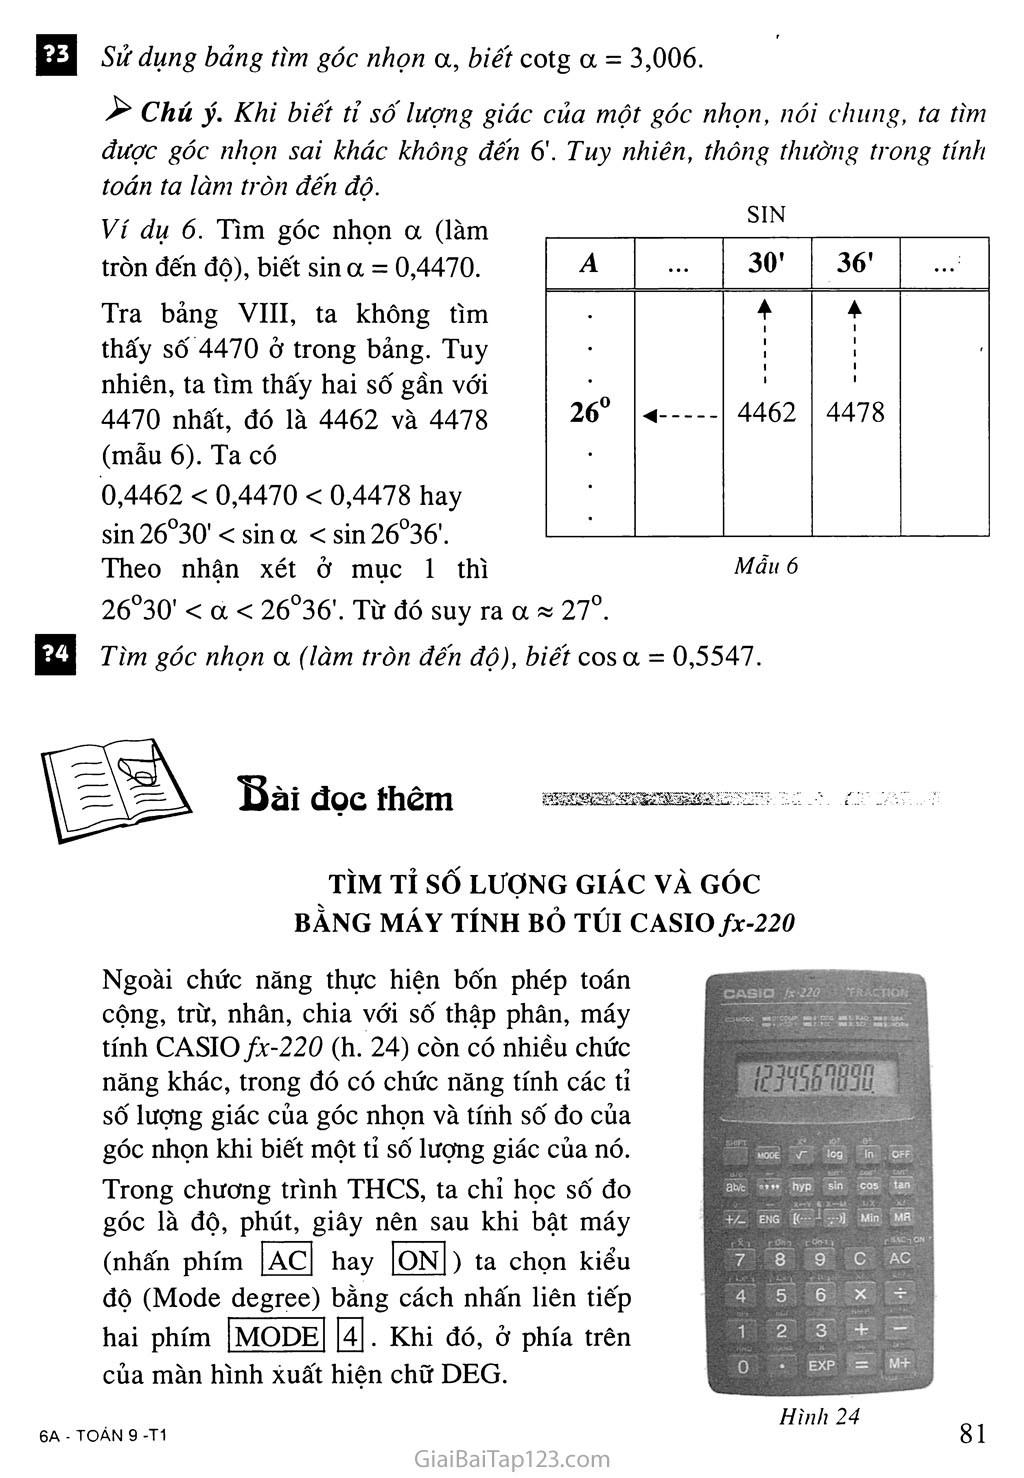 Bài 3. Bảng lượng giác trang 5